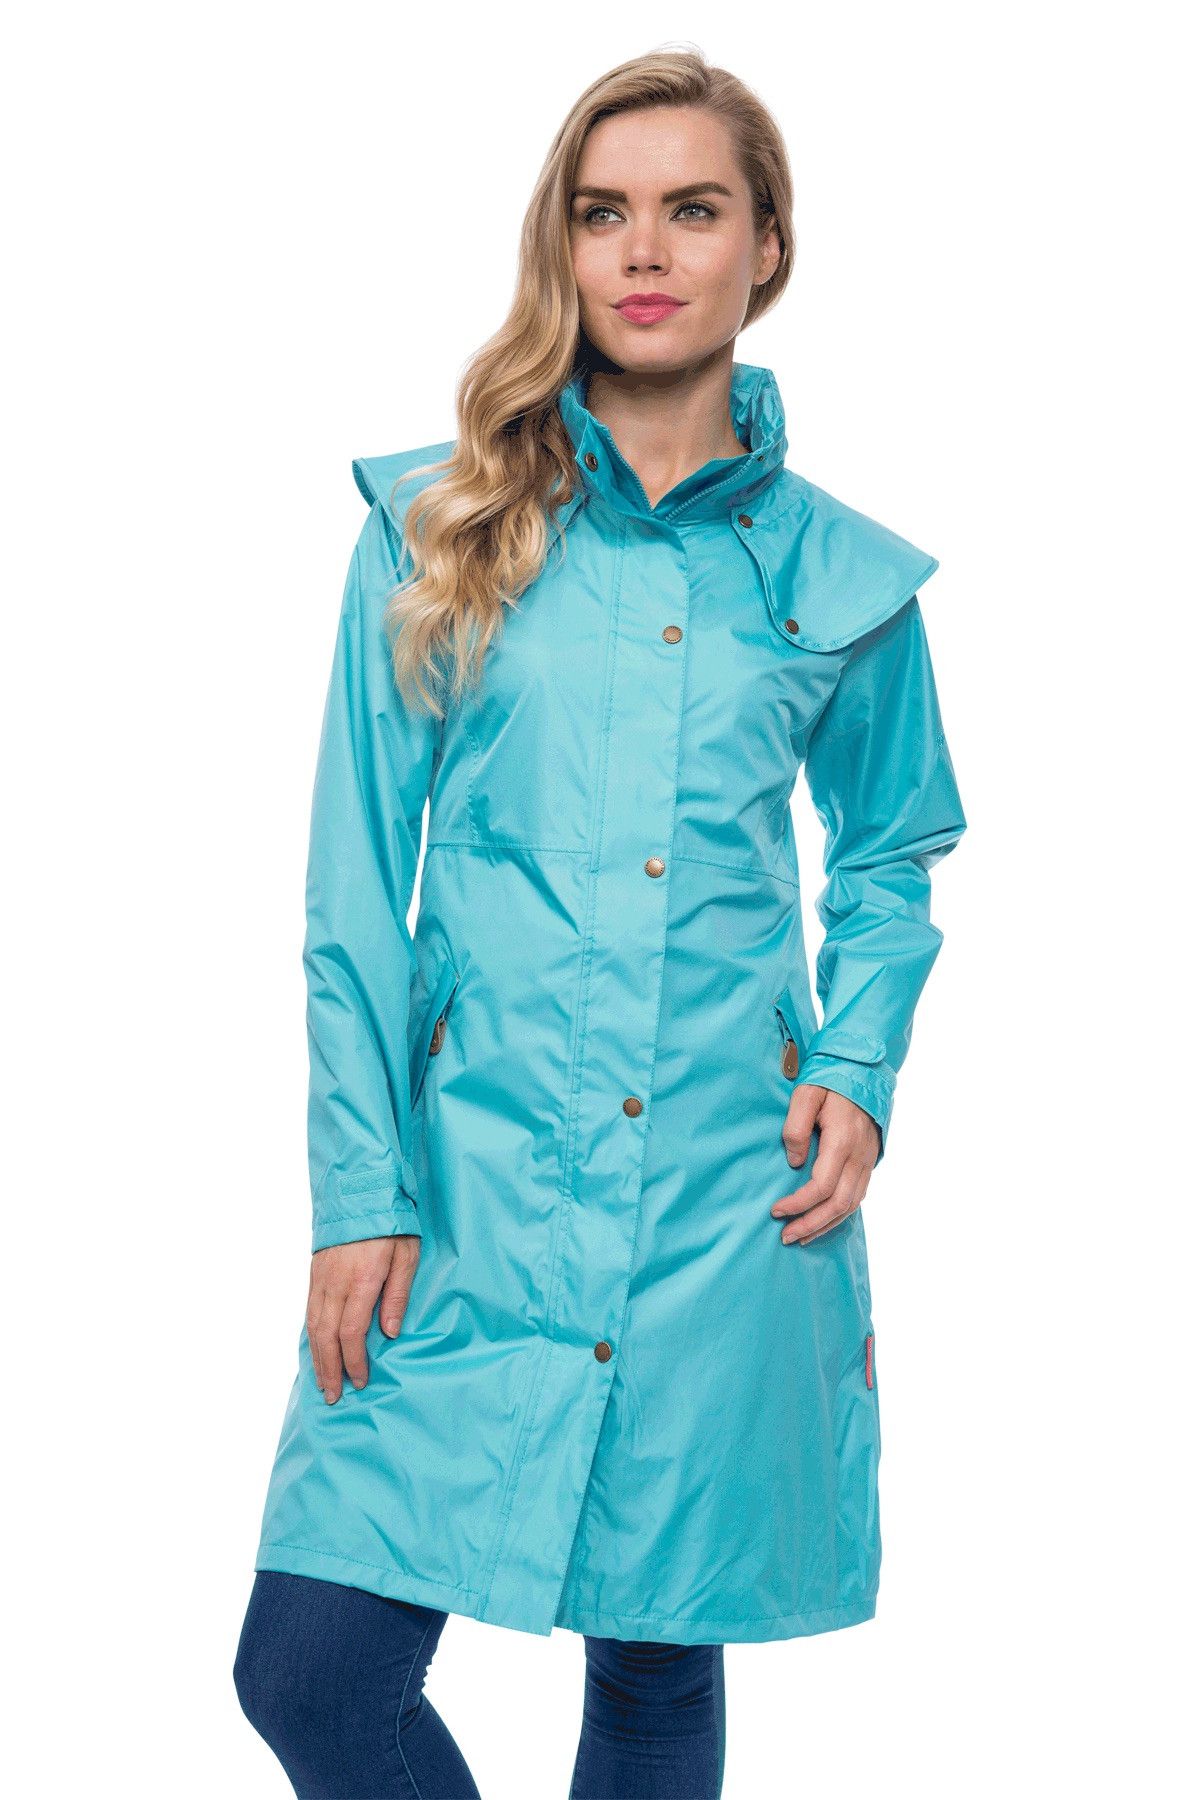 Aintree Ladies Lightweight Waterproof Raincoat | Target Dry